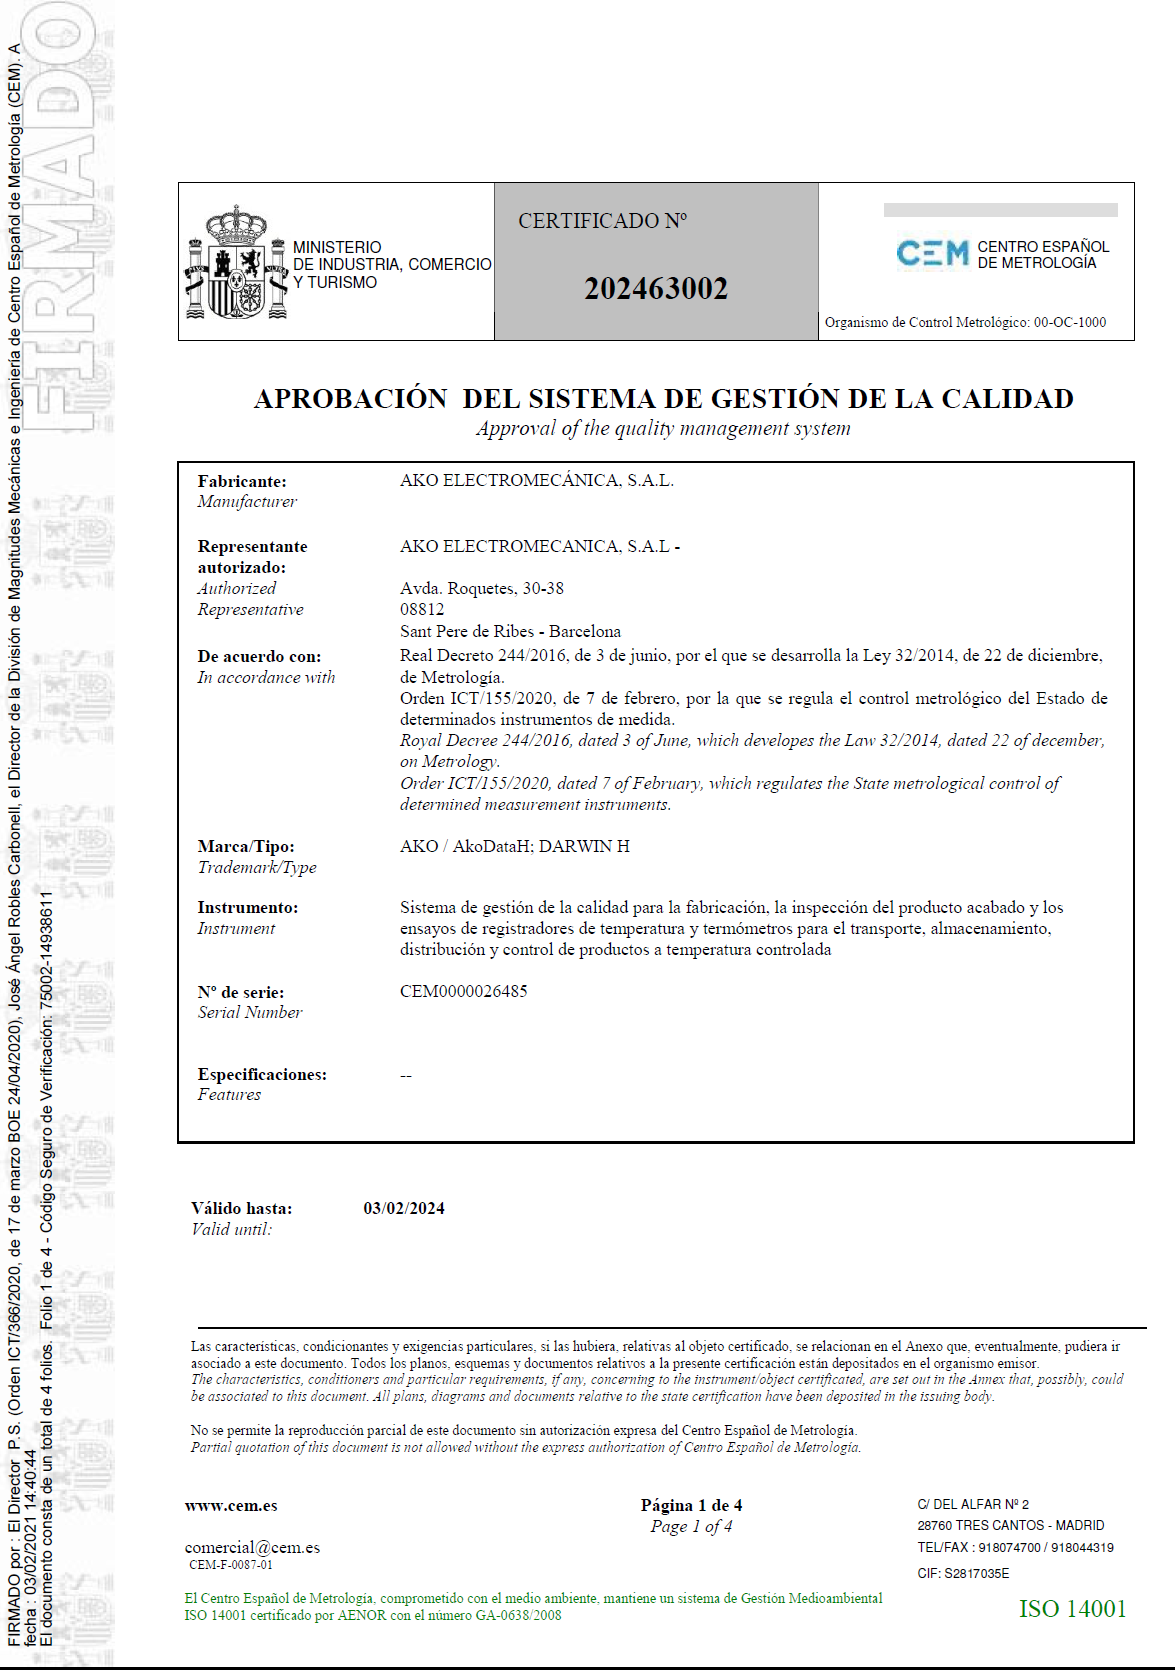 Certificado de aprobación del sistema de gestión de la calidad nº 202463002